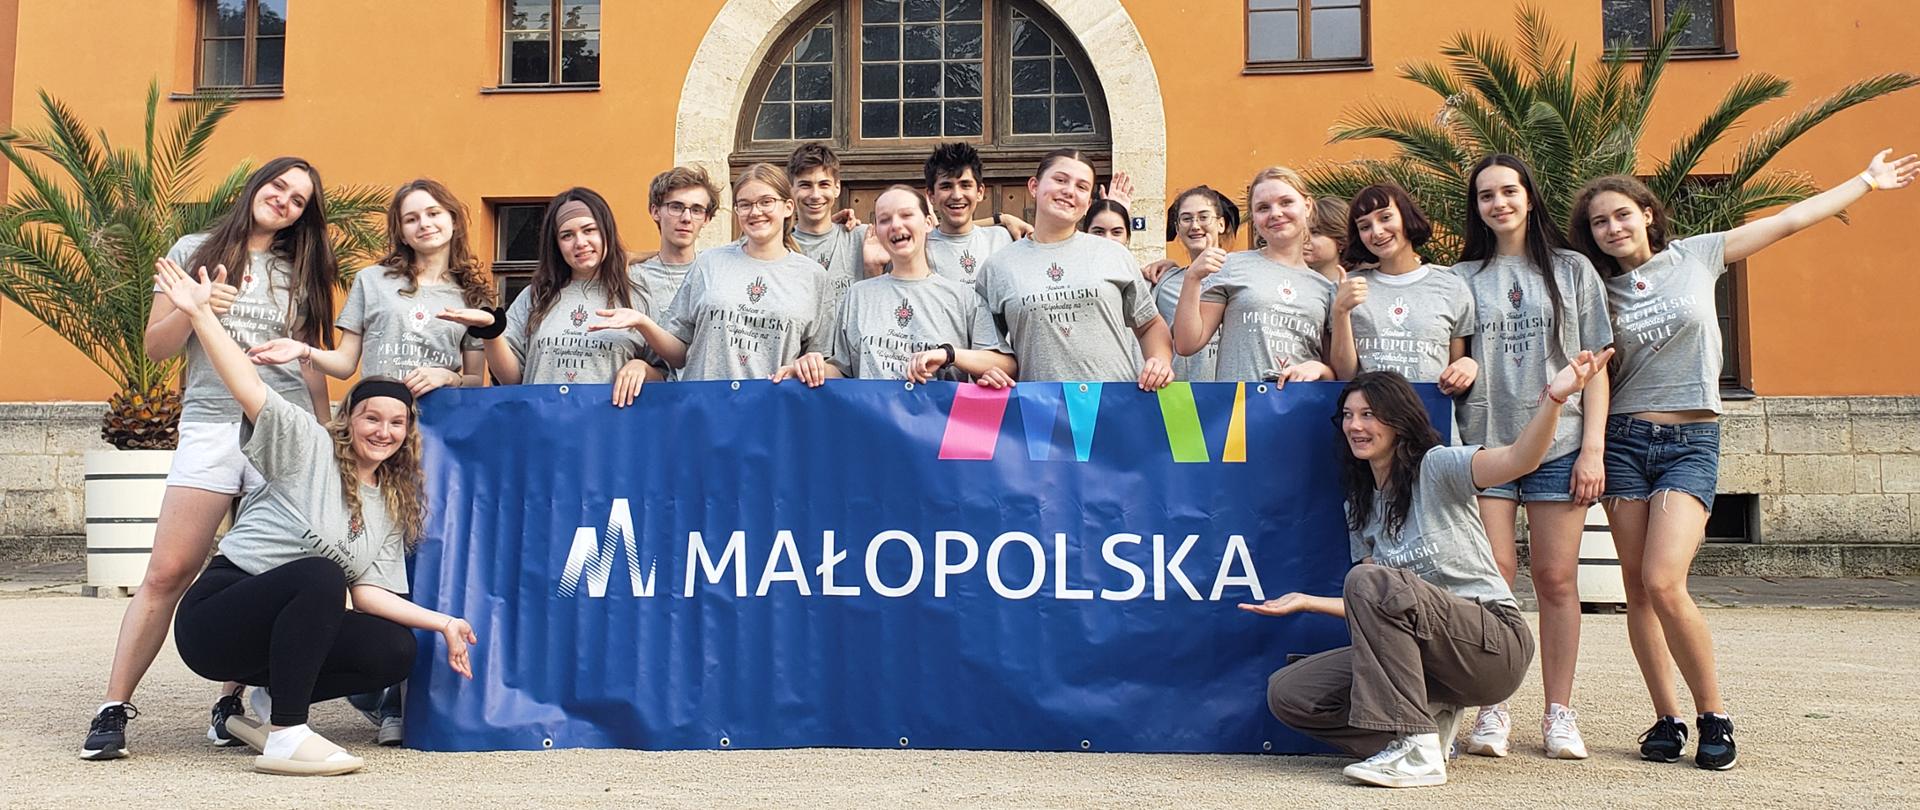 Zdjęcie grupowe uczniów będących na wyjeździe w Niemczech. W tle budynek z wieloma oknami ora dwoma palmami. Uczniowie pozują do zdjęcia trzymając baner współorganizatora Urząd Marszałkowski. Uczniowie ubrani są w jednakowe szare koszulki z logo "Małopolska"